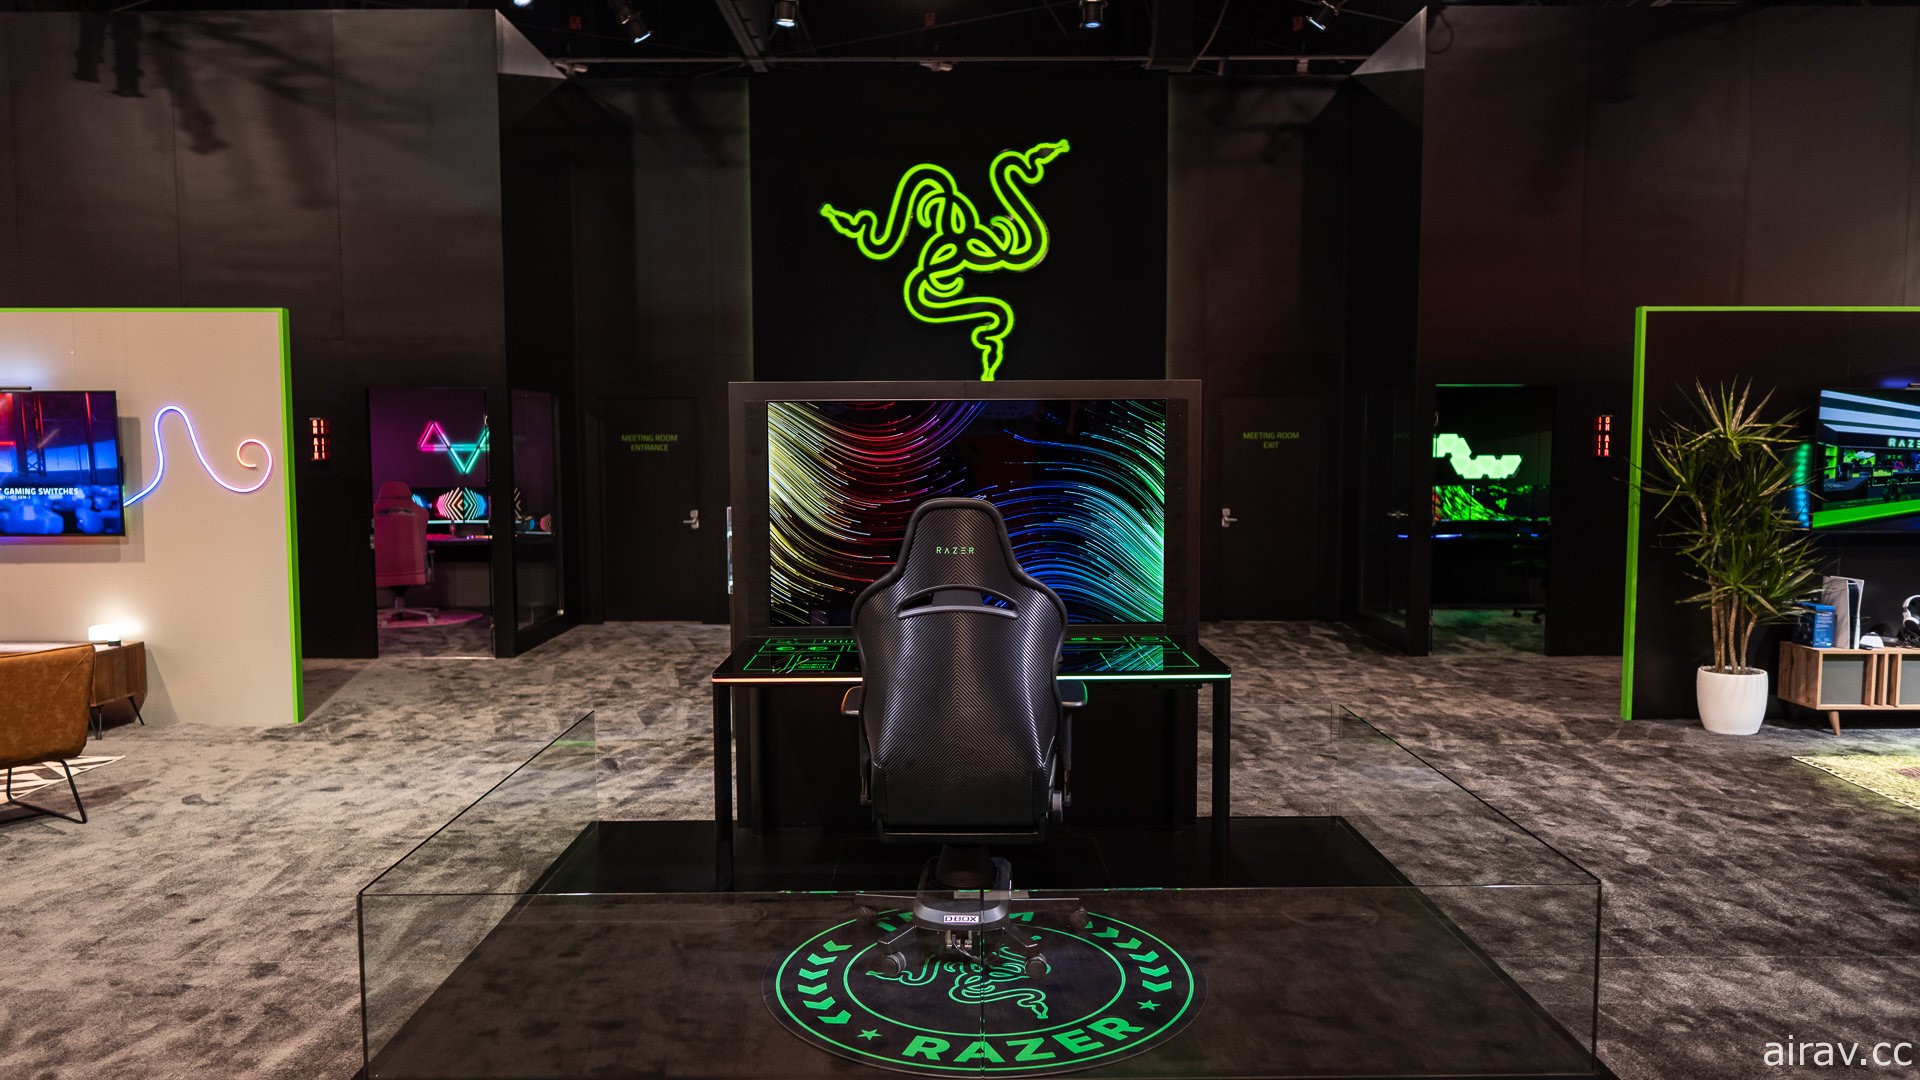 Razer 公開全球首款 RGB 模組化電競桌「Project Sophia」